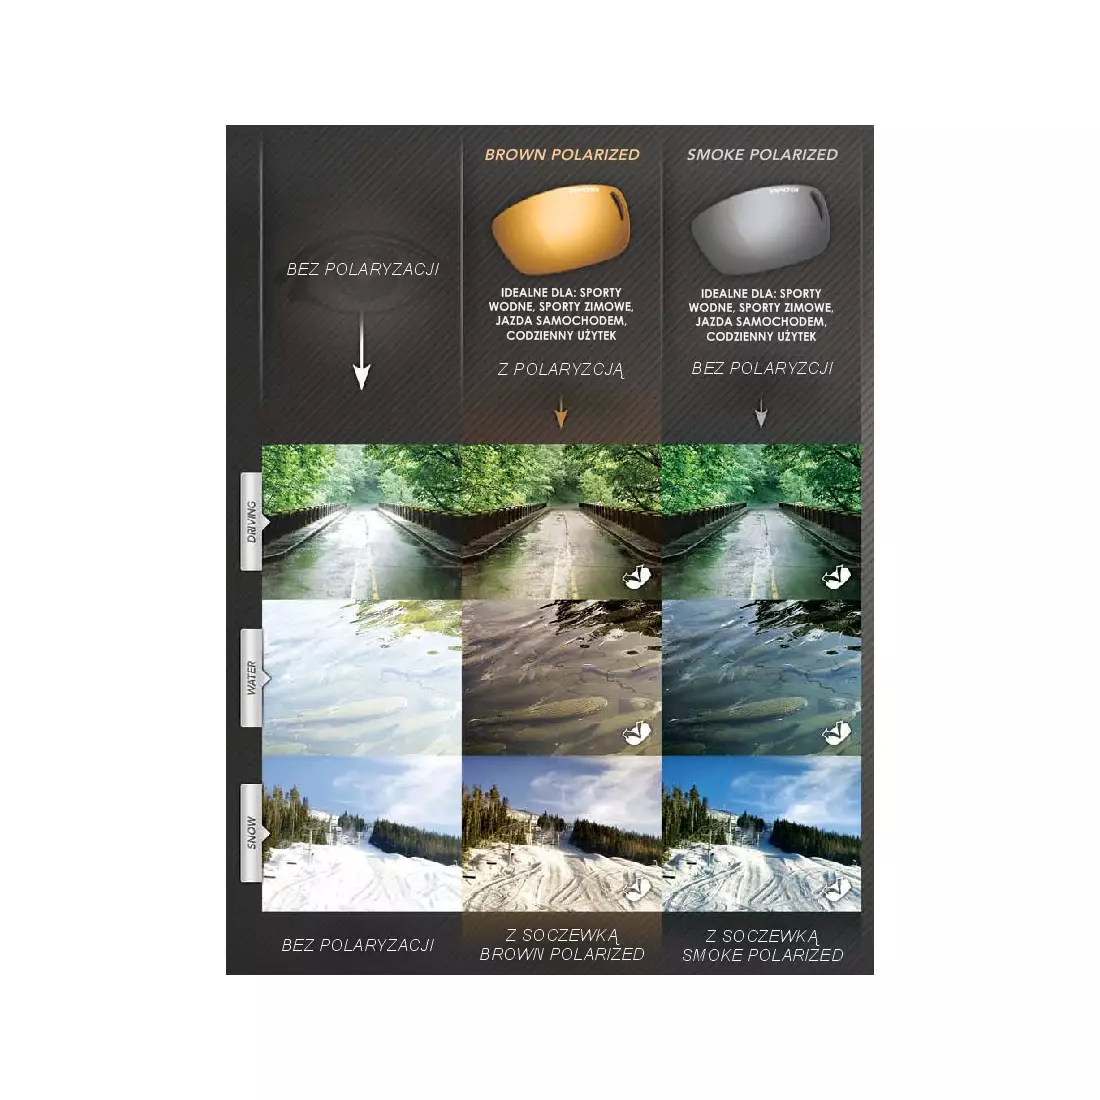 TIFOSI DURO POLARIZED FOTOTEC matná černá fotochromatická skla (1 sklo Hnědá POLARIZAČNÍ PHOTOCHROME 28,7%-9,4% propustnost světla) TFI-1030600160